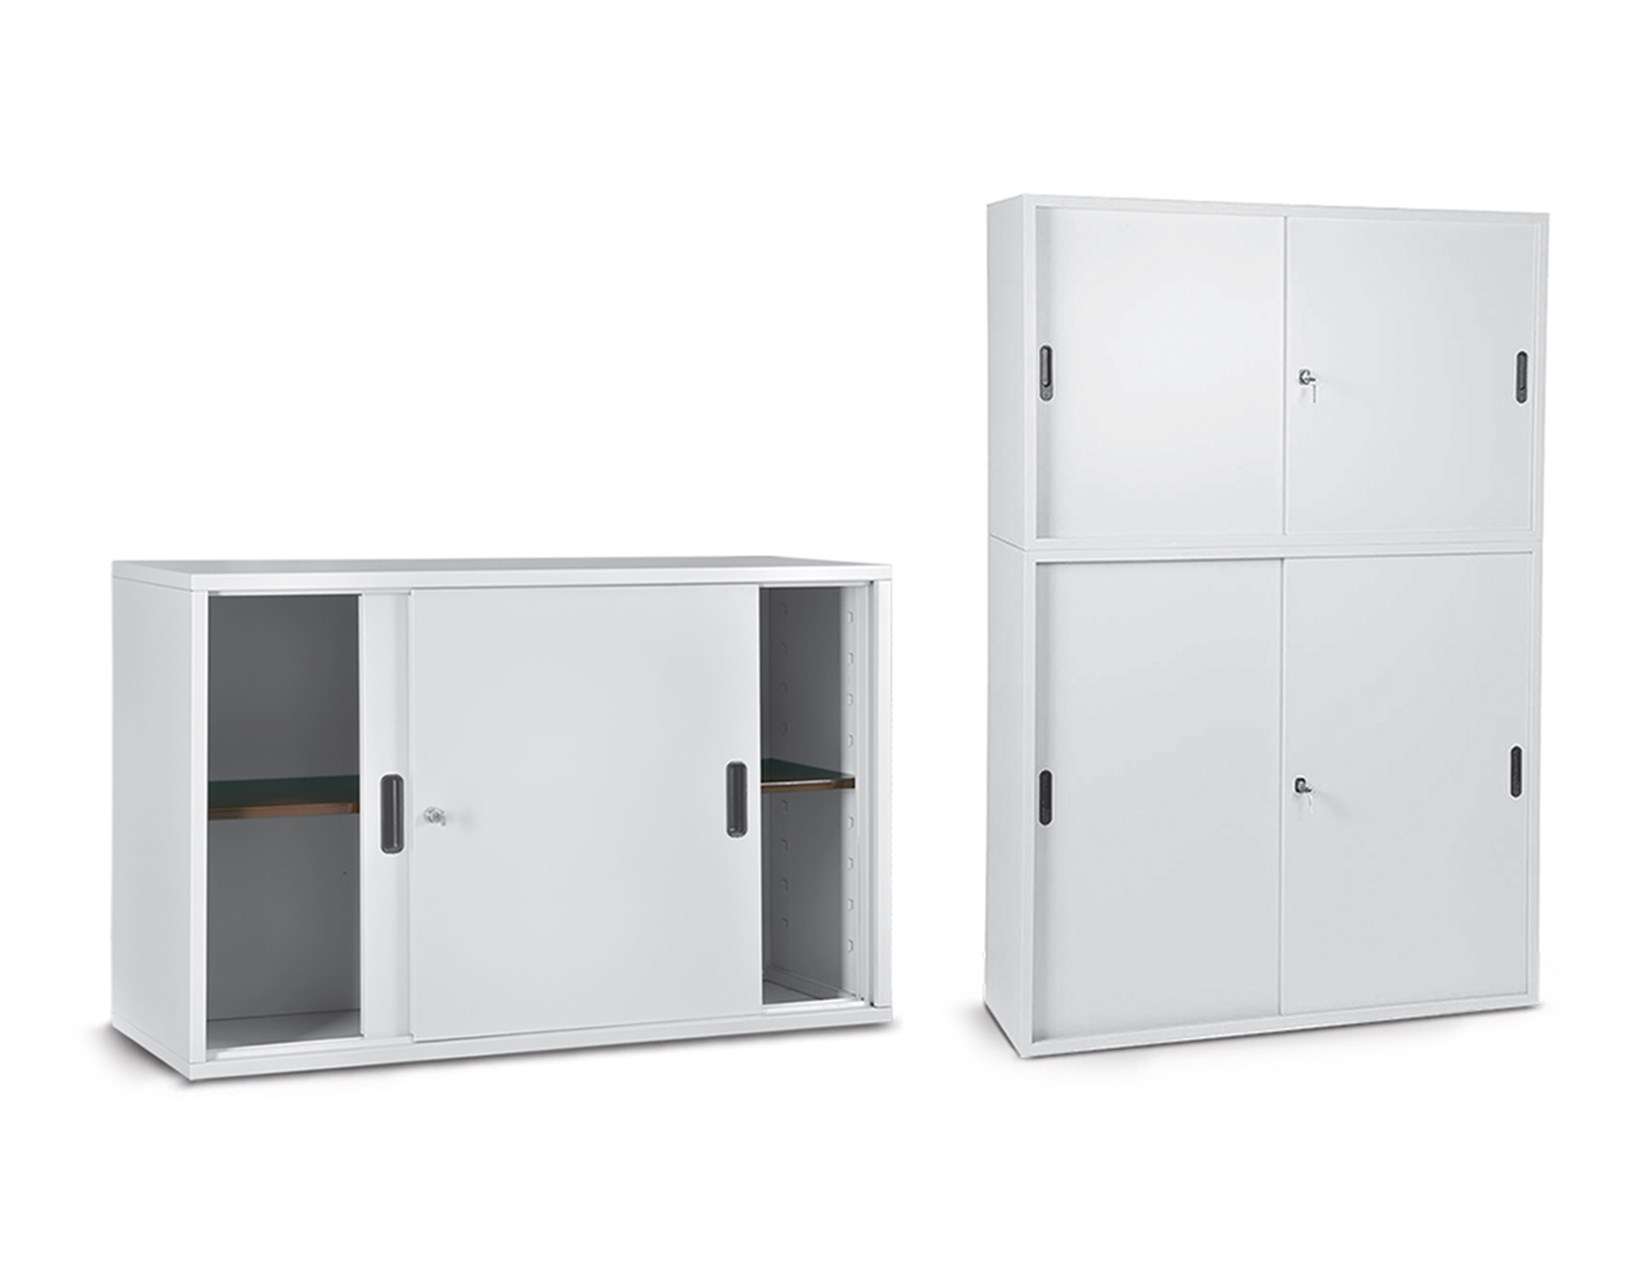 Double door archive cabinets